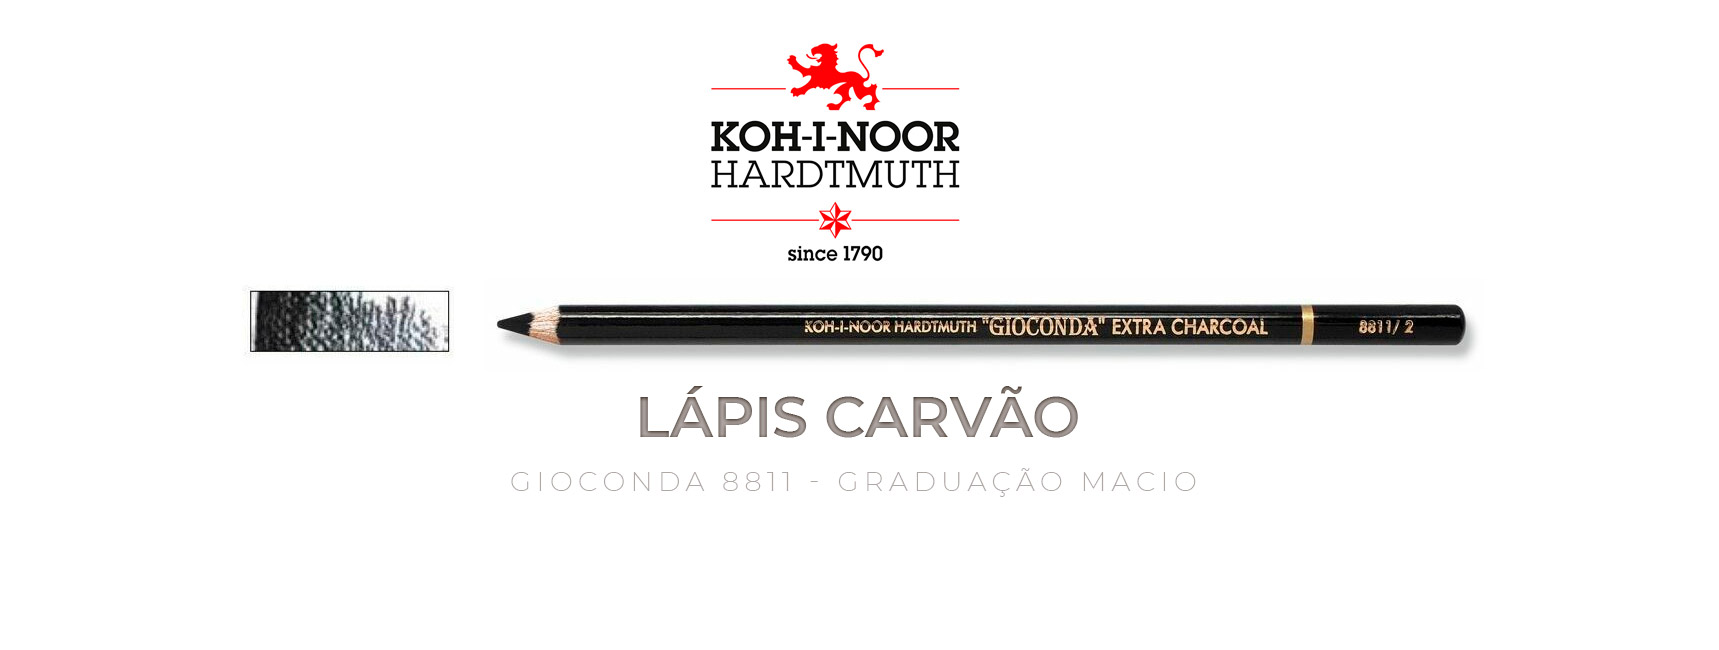 Lápis carvão negro graduação macio Koh-I-Noor